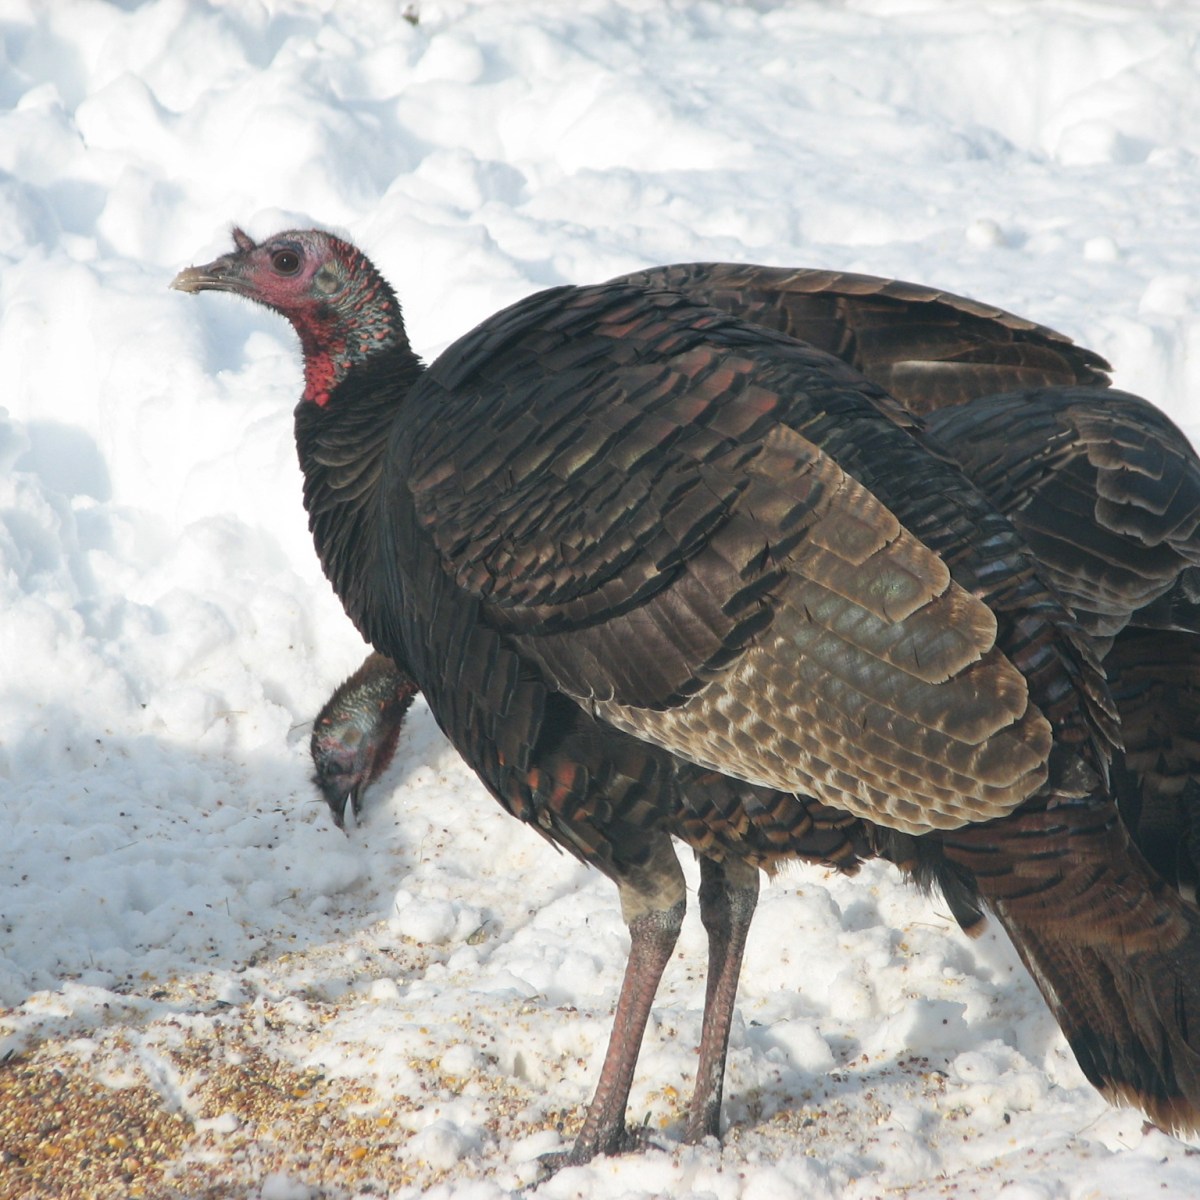 Wild turkey under bird feeder